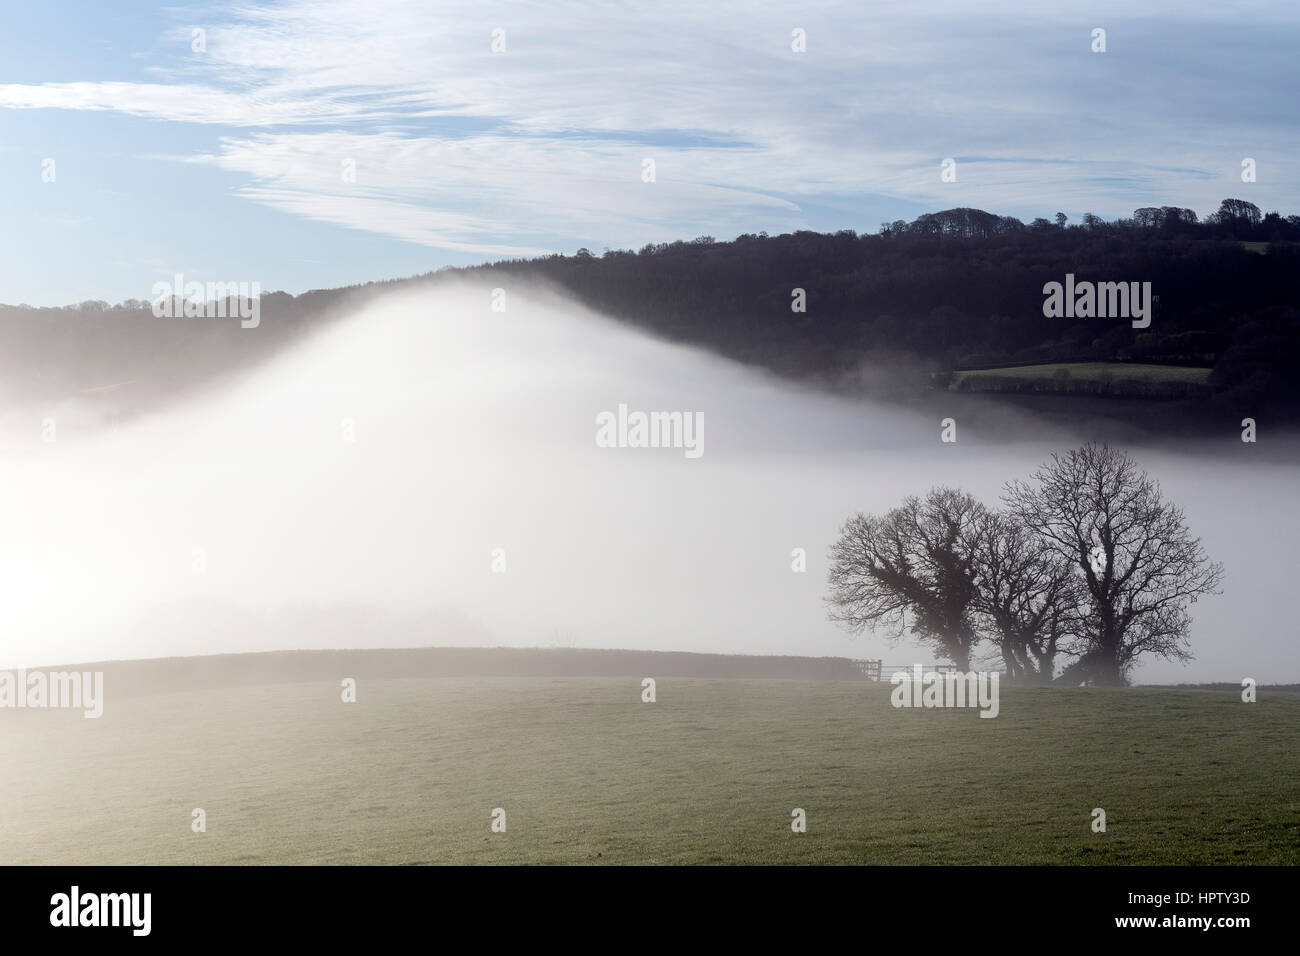 La nebbia rotoli su un combe o coombe una valle contenente il villaggio di Dunsford nella valle Teign,Cob e paglia imbiancato,Parco Nazionale di Dartmoor Foto Stock